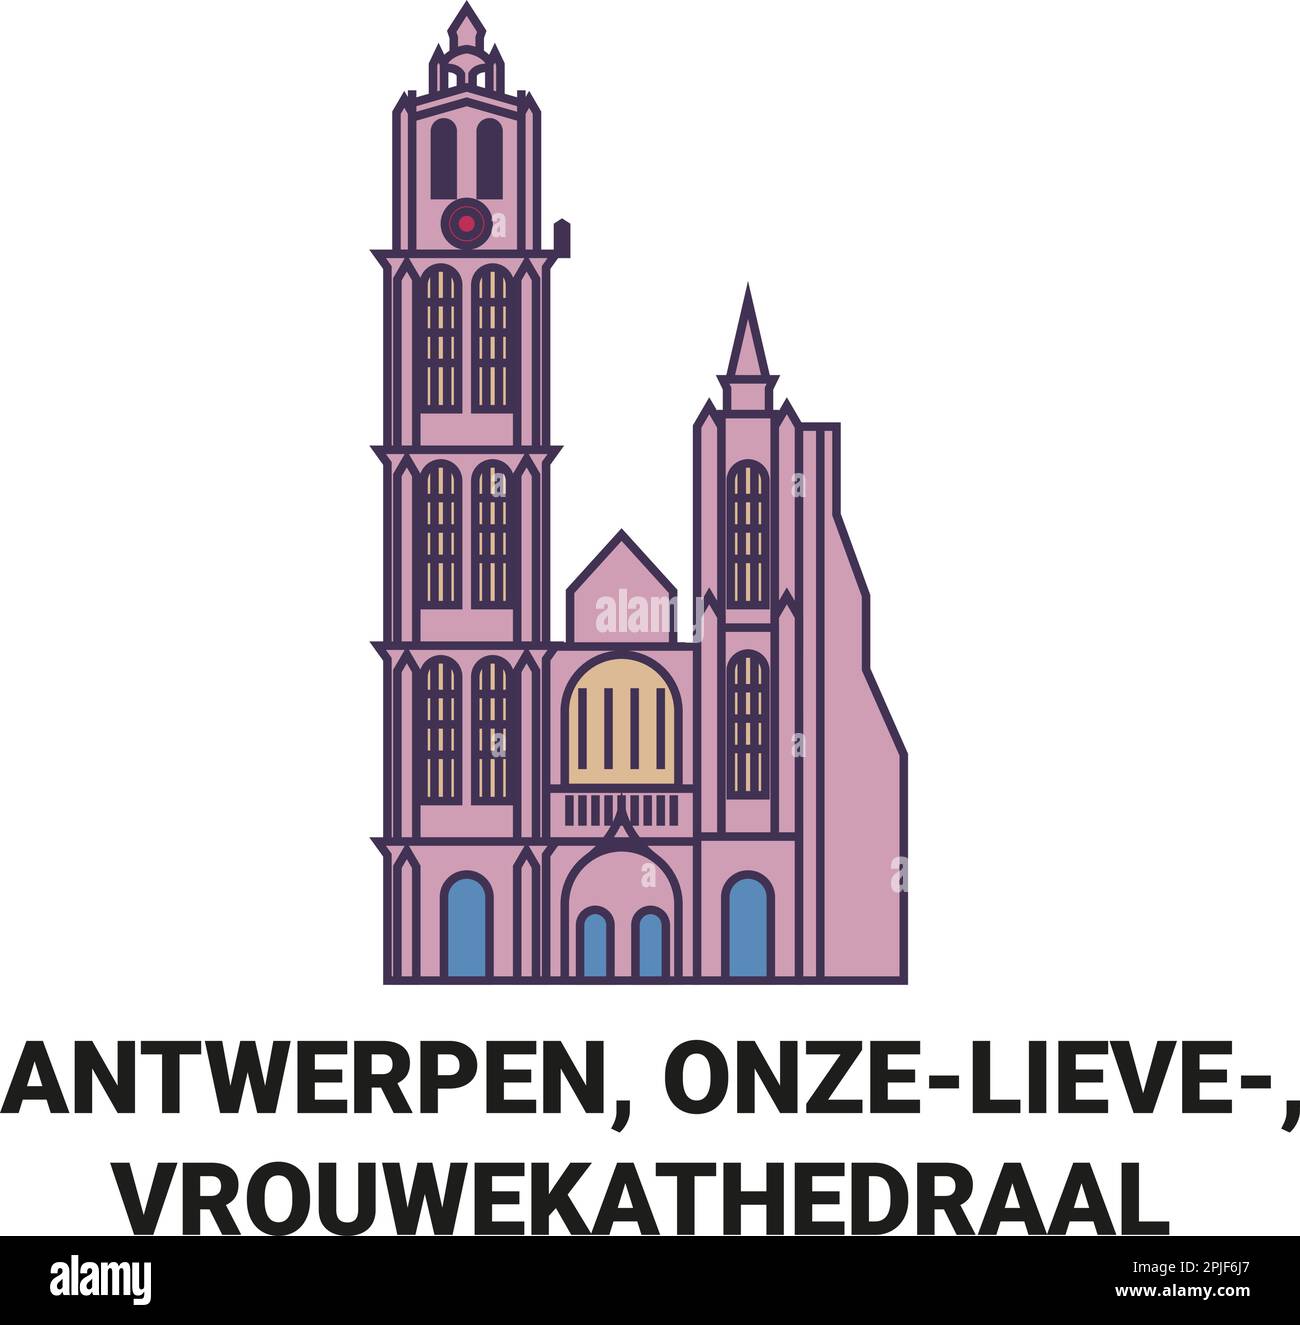 Belgien, Antwerpen, Onzelieve, Vrouwekathedraal Reise Wahrzeichen Vektordarstellung Stock Vektor